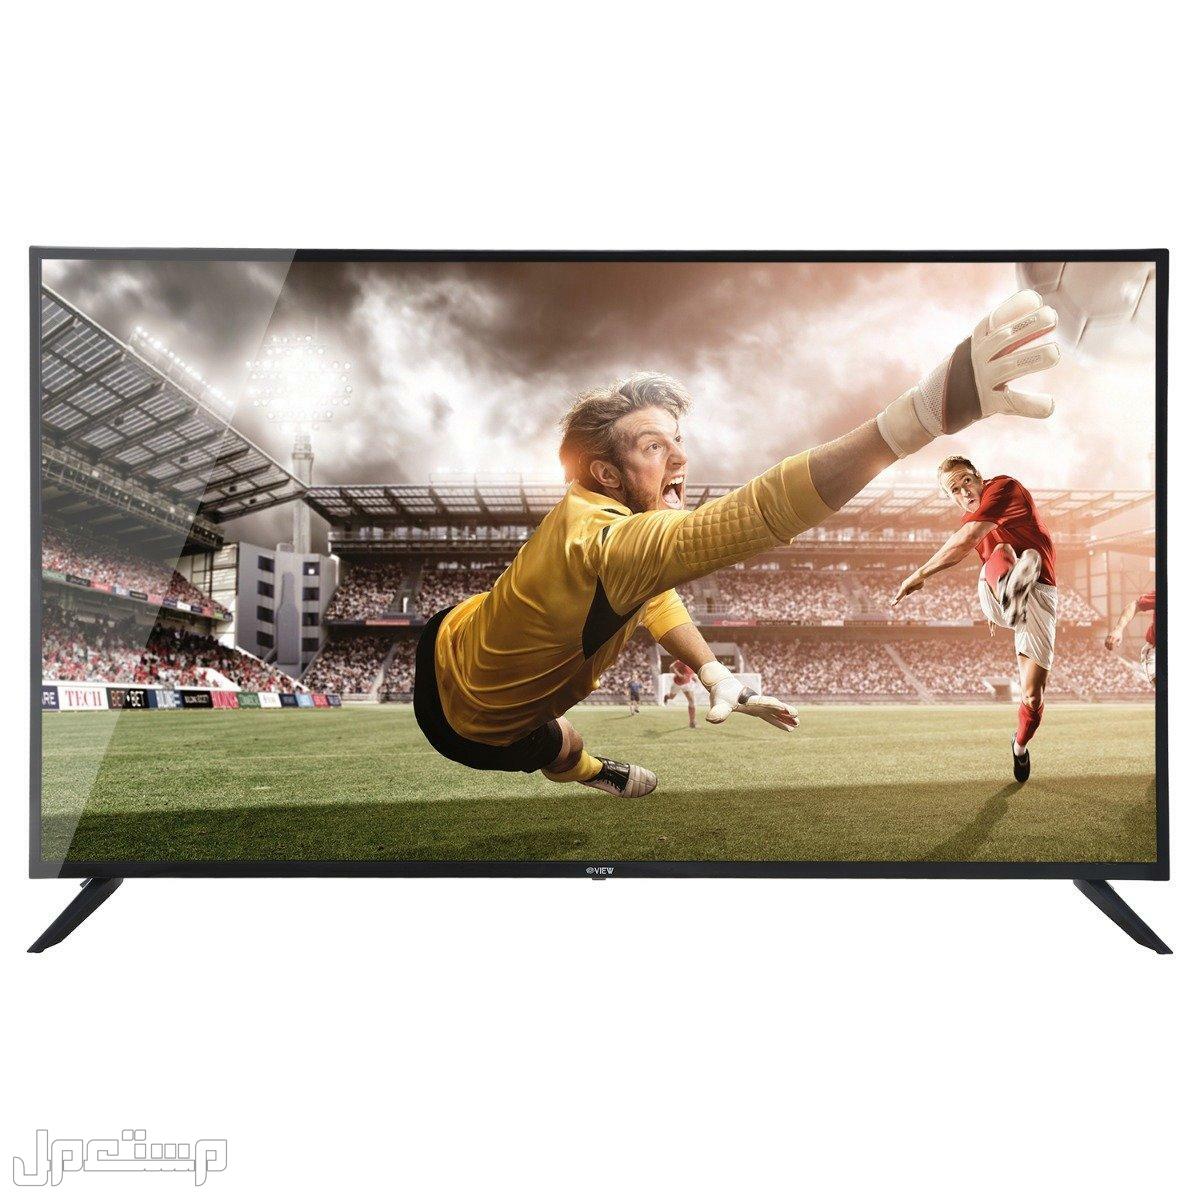 أرخص شاشات تلفزيون يمكنك شرائها (دليلك الكامل) في مصر ارخص شاشات تلفزيون